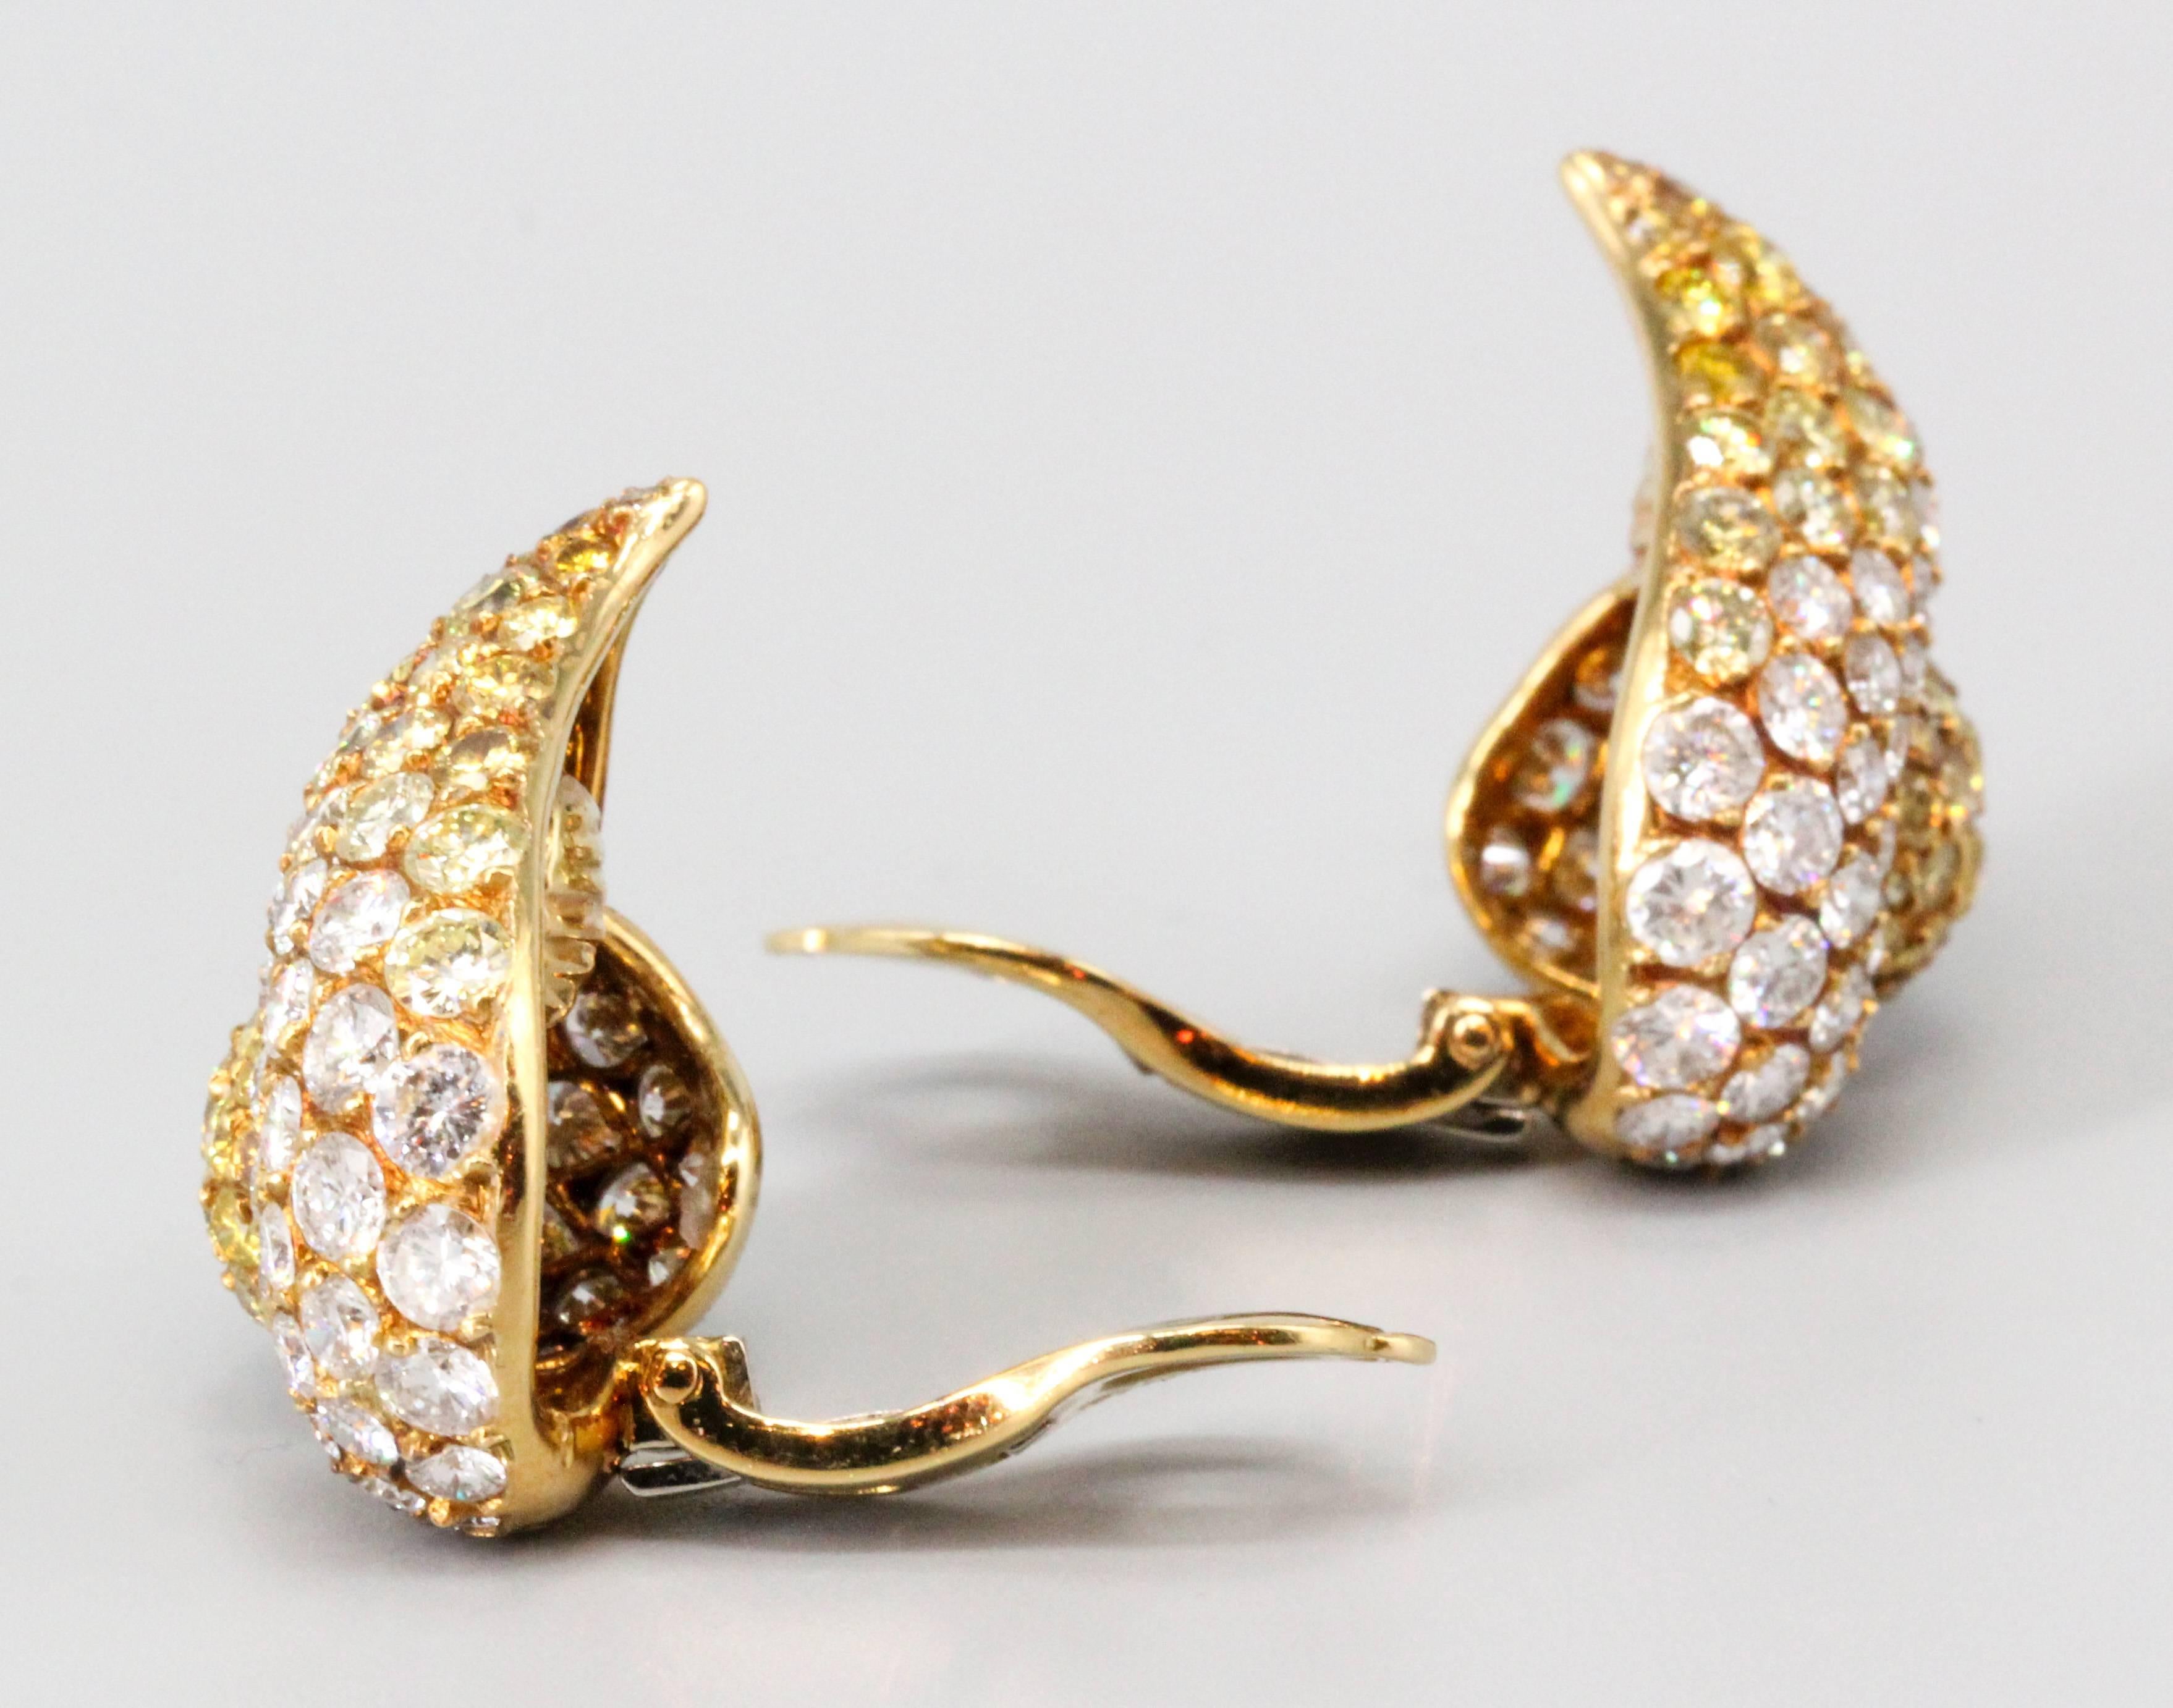 Sehr schöne Ohrringe mit gelben und weißen Diamanten, gefasst in 18 Karat Gelbgold von Gioia. Die Ohrringe haben ein abstraktes Design und sind mit ca. 9,0-10,0 ct. hochkarätigen runden Diamanten im Brillantschliff von weißer und natürlicher gelber